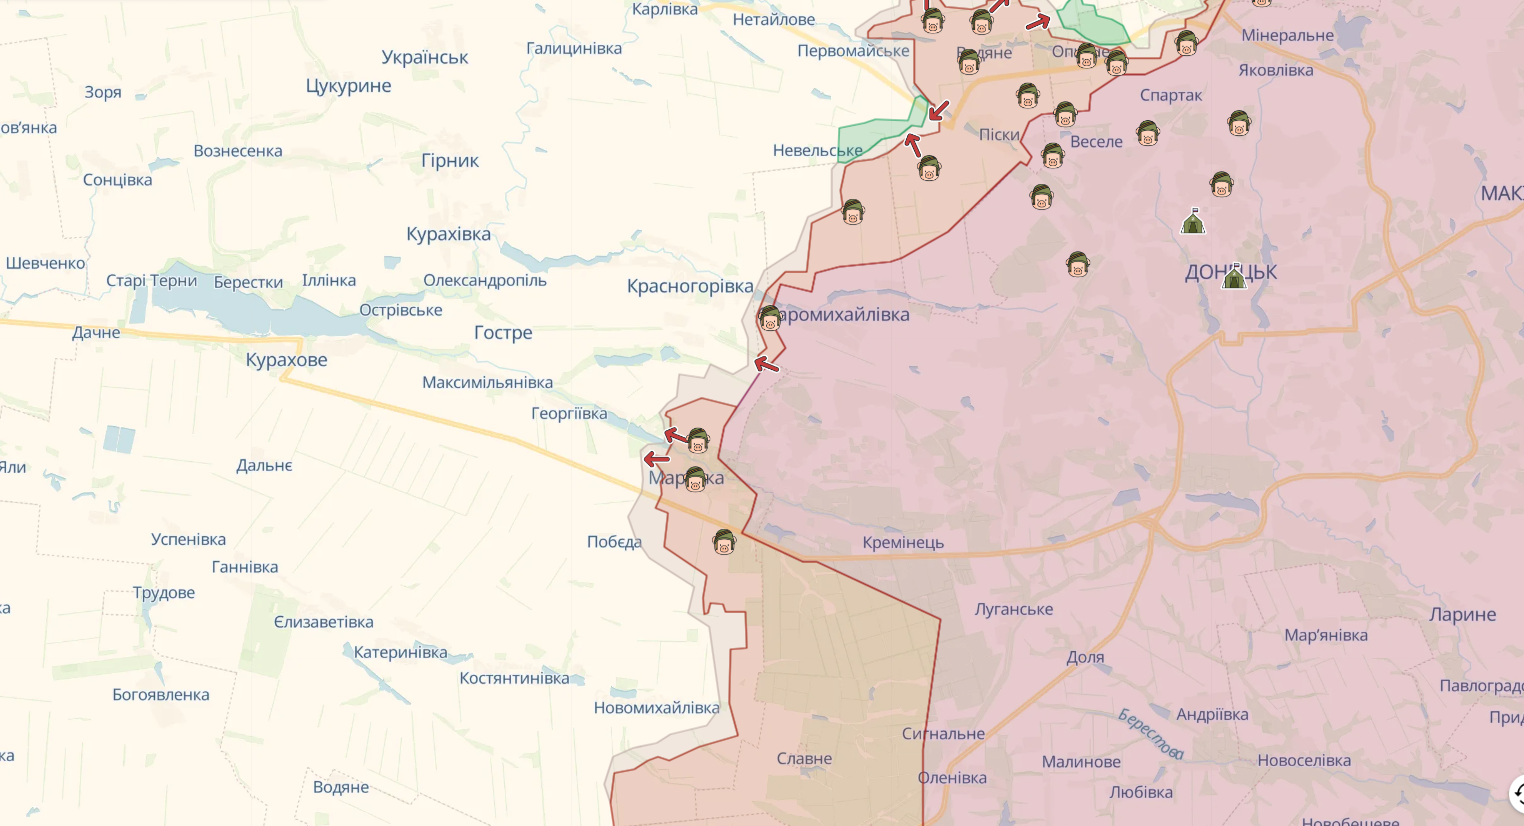 Силы обороны удерживают занятые позиции на левобережье Днепра, за сутки на фронте произошло 97 боевых столкновений – Генштаб